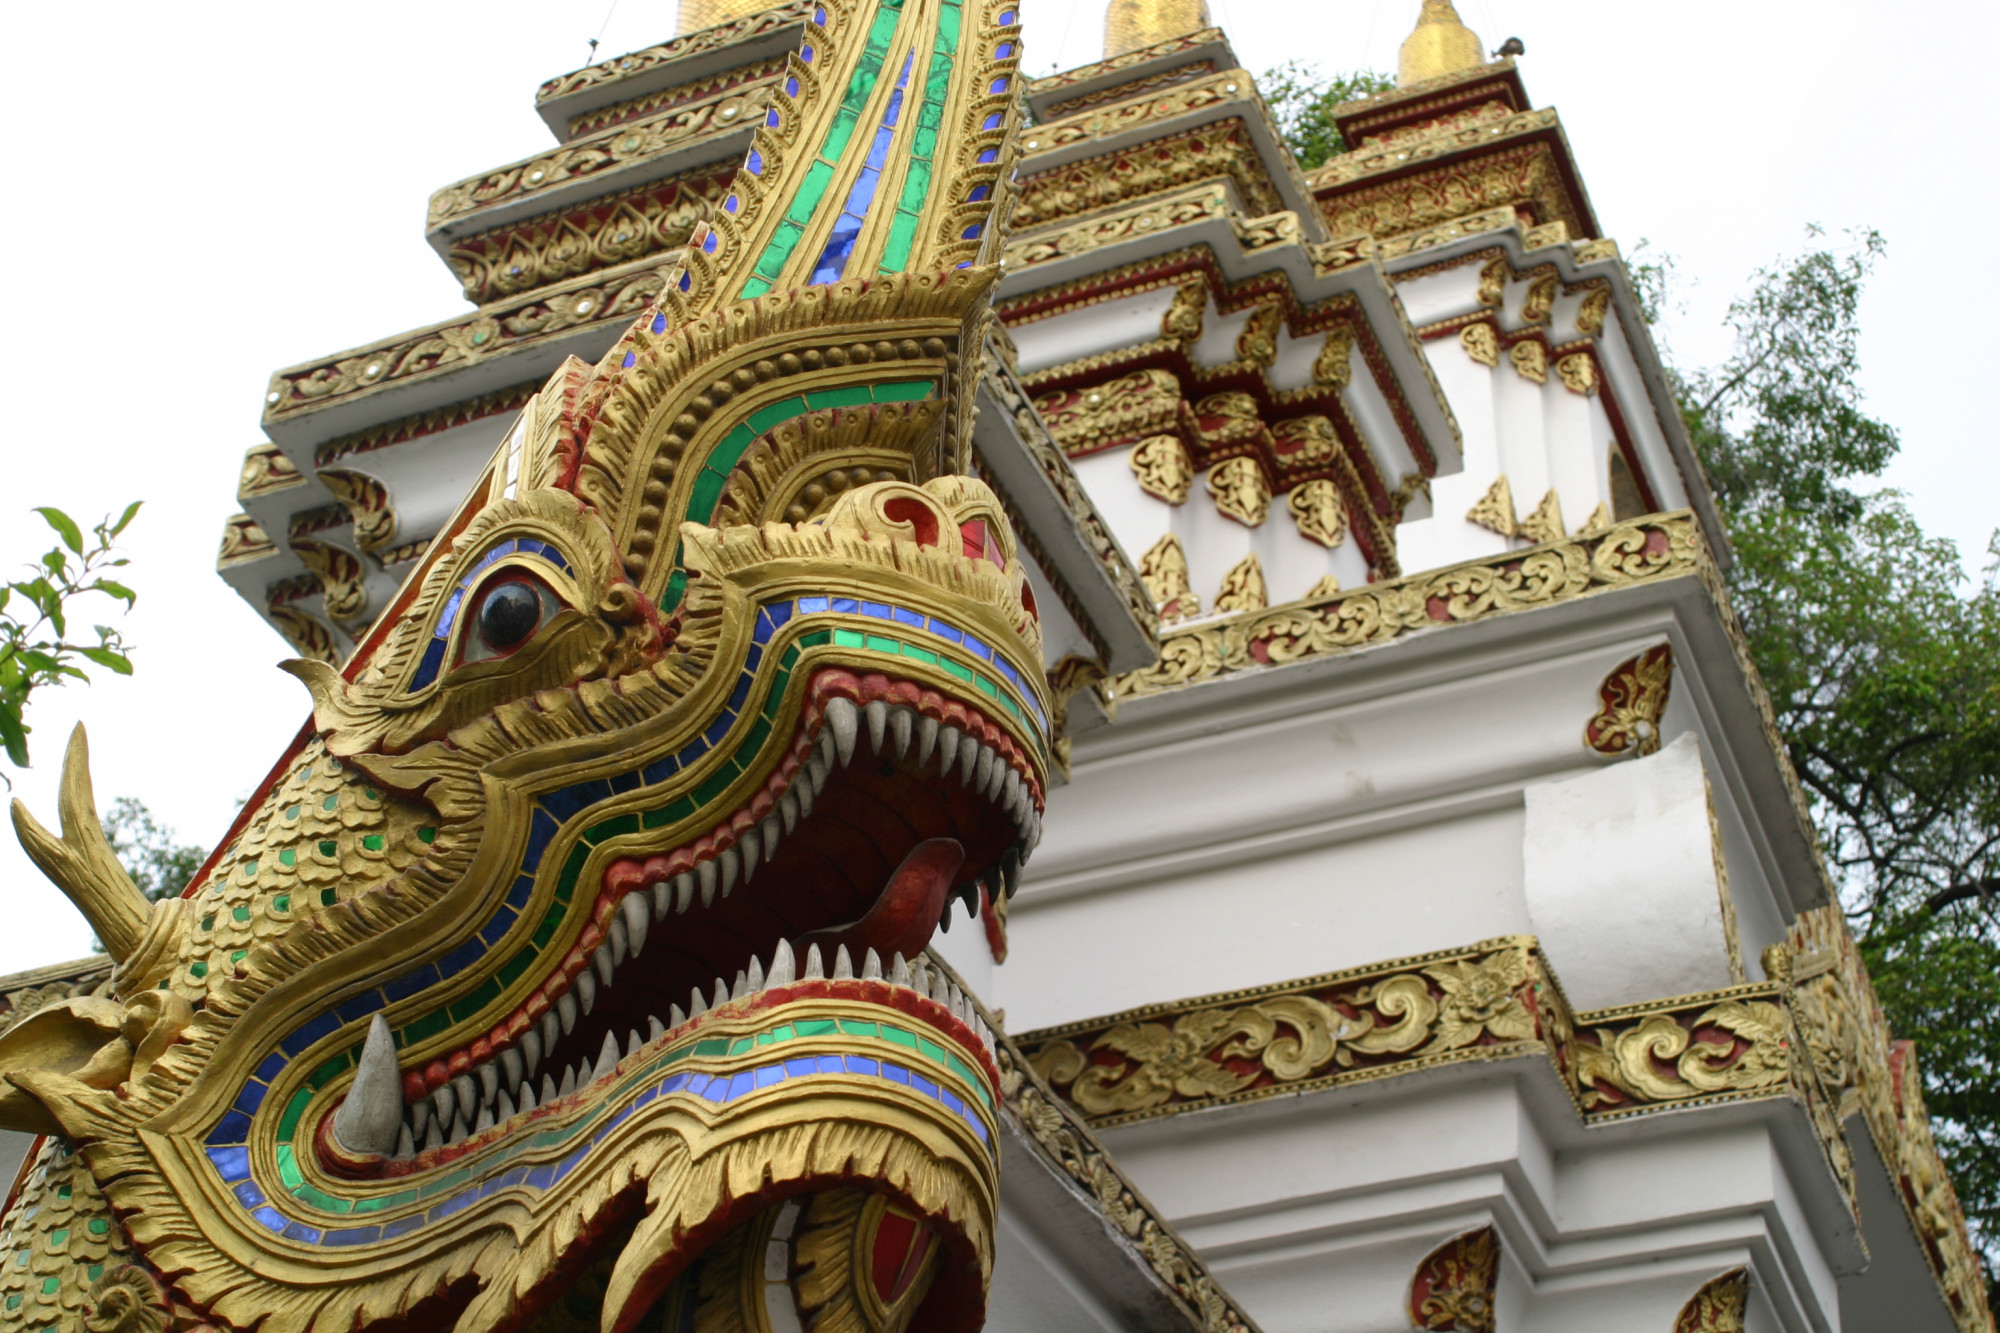 Khi nhắc đến thời gian xây dựng, người ta không xác định được vào lúc nào. Người dân chỉ biết rằng đền Wat Samphran xuất hiện cách đây rất lâu, theo thời gian cầu thang bên trong ngôi đền đã bị mục nát.  Cuối cùng bây giờ chỉ còn 2 tầng gần nhất với cửa ra vào là được phép bước vào, các tầng trên cao hầu như đều bị cấm leo lên. Chính vì thế mà mặc dù rất muốn leo lên cao để cảm nhận được toàn bộ vẻ đẹp của con rồng, du khách chỉ có thể đứng phía dưới ngắm nhìn.  Ngôi đền có 1-0-2 ở Thái Lan, được bao quanh bởi một con rồng khổng lồ - 3   Ngôi đền có 1-0-2 ở Thái Lan, được bao quanh bởi một con rồng khổng lồ - 4   Tại Thái Lan, người dân đặc biệt tin vào truyền thuyết về rồng, vì thế du khách đến đây có thể thấy tượng rồng khắp nơi. Ngoài ra, người Thái có sở thích đặc biệt với vàng. Vì thế, họ dát vàng lên nhiều công trình như đền thờ, chùa chiền, cung điện...  Ngôi đền có 1-0-2 ở Thái Lan, được bao quanh bởi một con rồng khổng lồ - 5   Ở Thái Lan, du khách sẽ thấy rất nhiều ngôi đền, tất cả đều được trang trí rất tráng lệ.   Ngôi đền có 1-0-2 ở Thái Lan, được bao quanh bởi một con rồng khổng lồ - 6   Ngôi đền có 1-0-2 ở Thái Lan, được bao quanh bởi một con rồng khổng lồ - 7   Ngôi đền có 1-0-2 ở Thái Lan, được bao quanh bởi một con rồng khổng lồ - 8   Trong số gần 40.000 ngôi đền ở Thái Lan, chỉ có duy nhất đền Wat Samphran là độc đáo nhất. Mặc dù bây giờ không còn cách nào khác để leo lên vị trí cao nhất của đền rồng, nhưng du khách có thể trải nghiệm sự quyến rũ của ngôi đền ở cự ly gần.  Nếu nhìn từ trên cao, du khách sẽ có cảm giác ngôi đền như bị một con rồng lớn chiếm giữ, cảnh tượng như giống trong một bộ phim viễn tưởng nào đó.  Đối với những người quan tâm đến Phật giáo, đền Wat Samphran chắc chắn là một địa điểm không thể bỏ qua.